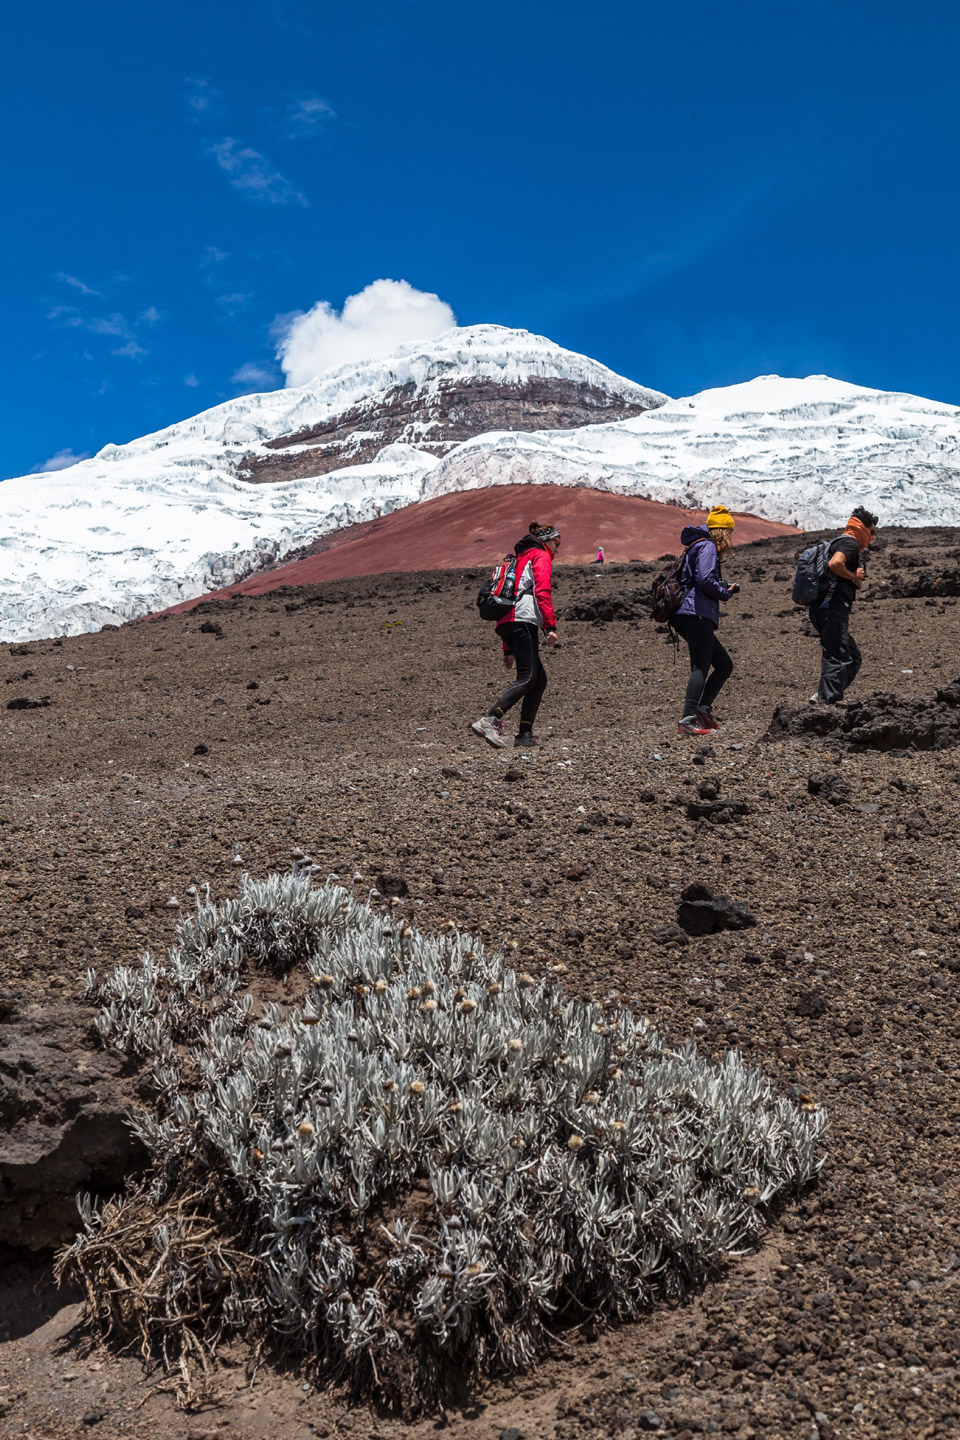 Wanderung entlang der Kulisse des berühmten Vulkans Cotopaxi - (Foto: ©Ecuadorpostales/Shutterstock)